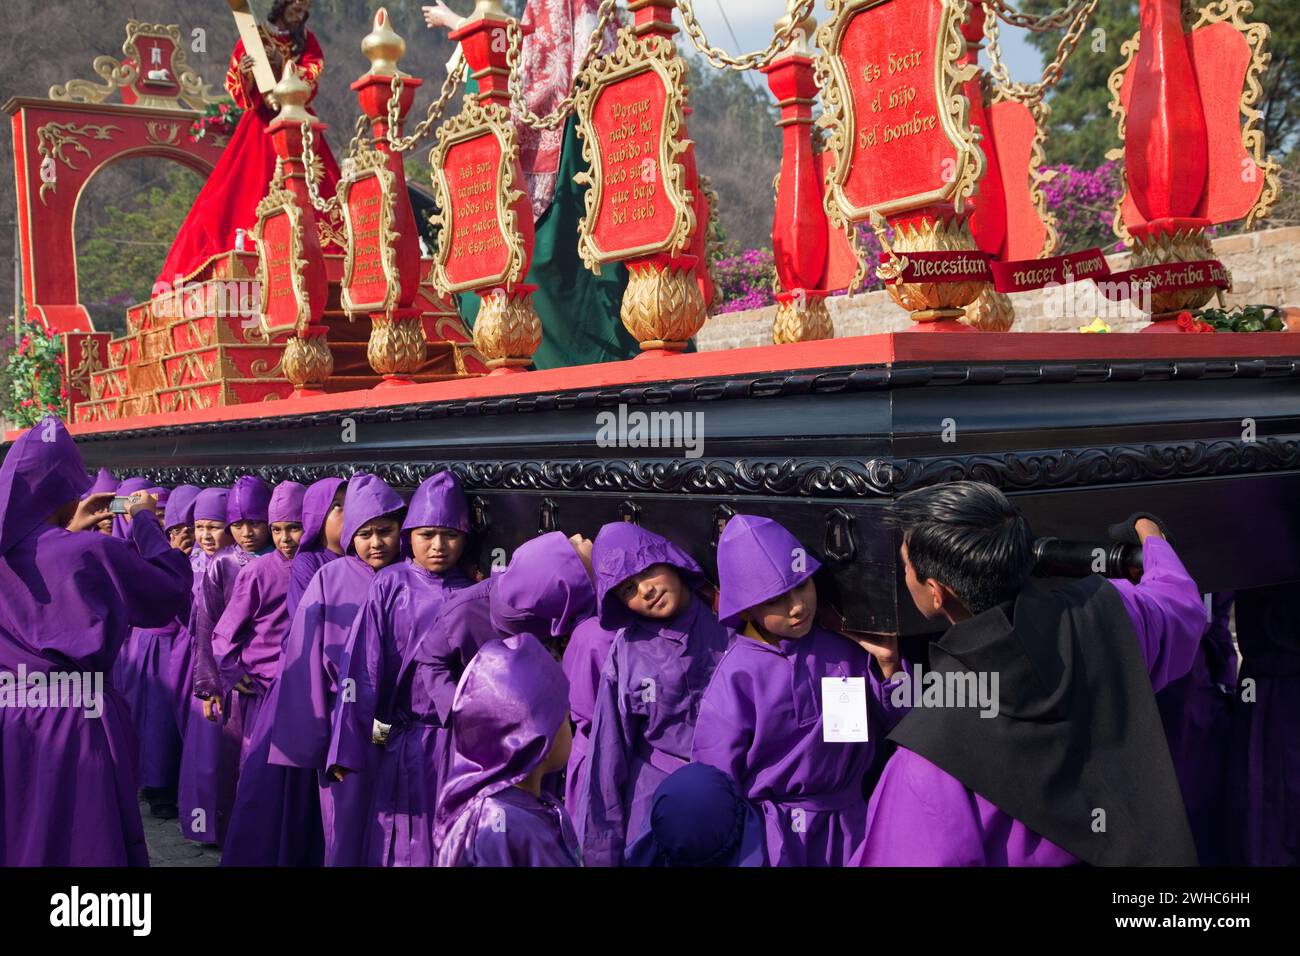 Antigua, Guatemala. Ragazzi adolescenti che portano un galleggiante (Anda) in una Processione religiosa durante la settimana Santa, la Semana Santa. Foto Stock